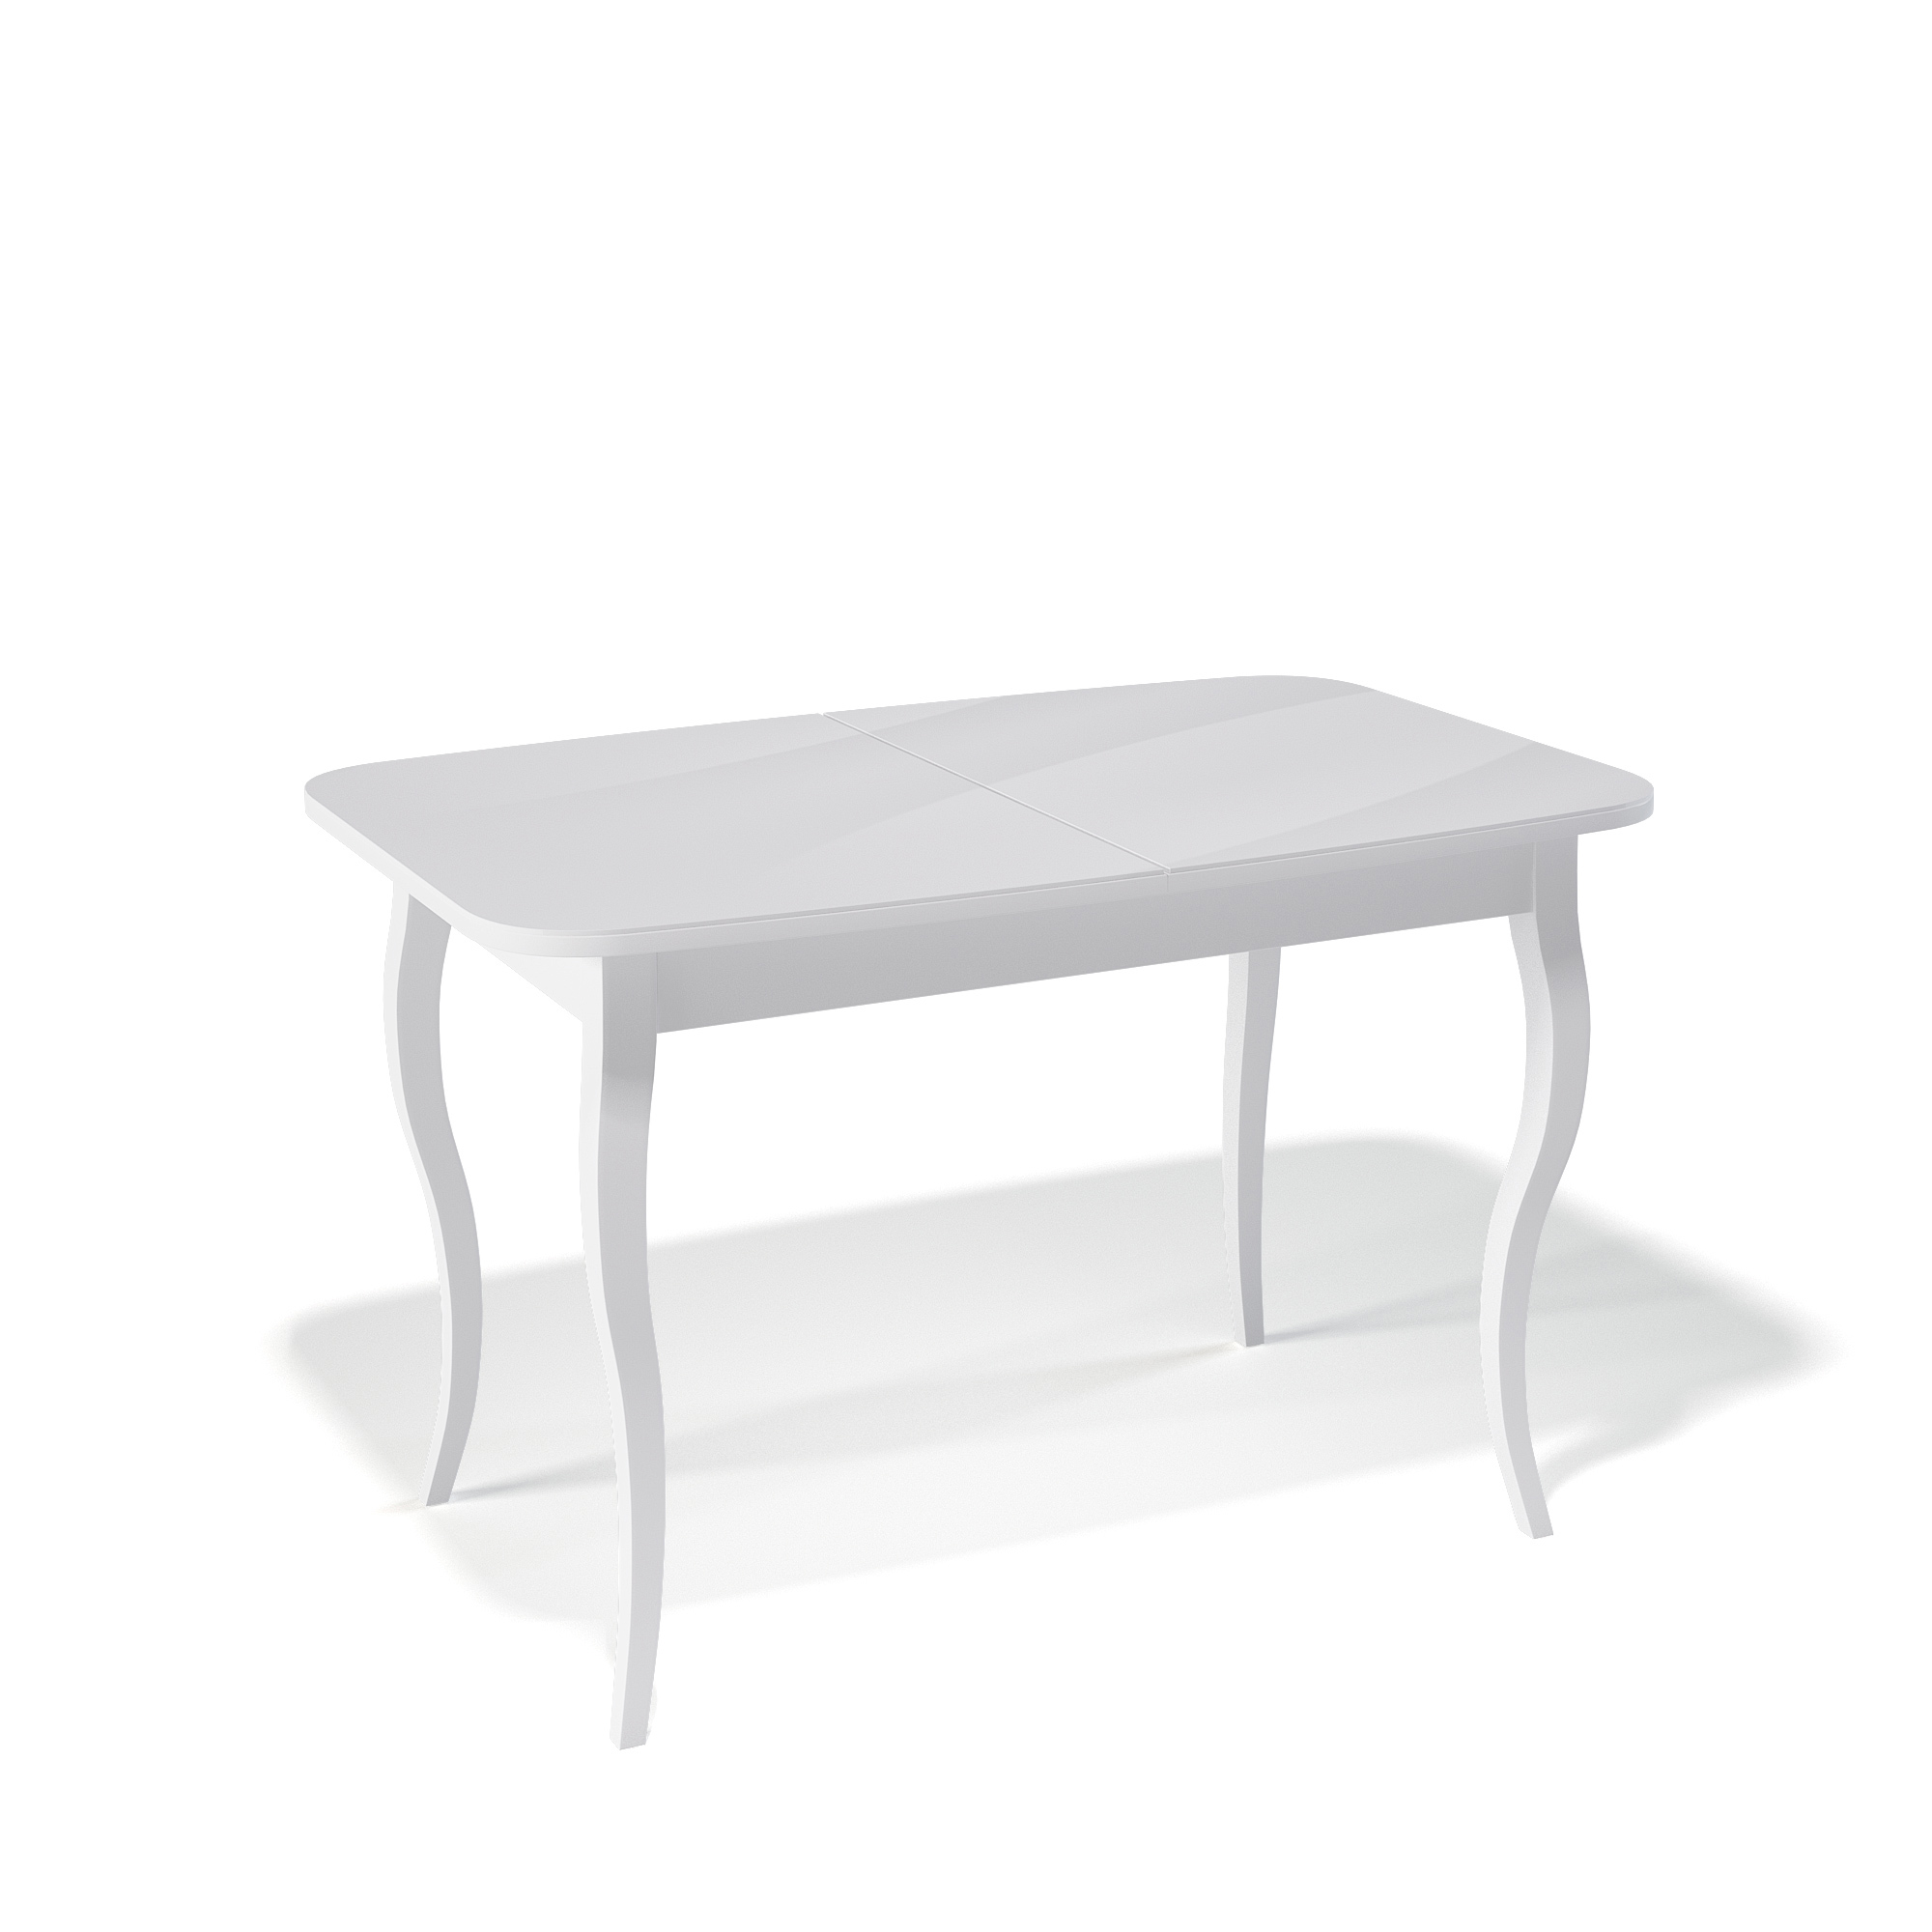 91054015 Кухонный стол прямоугольный 330752 120-160x120x76 см ЛДСП цвет белый M/C STLM-0459654 KENNER